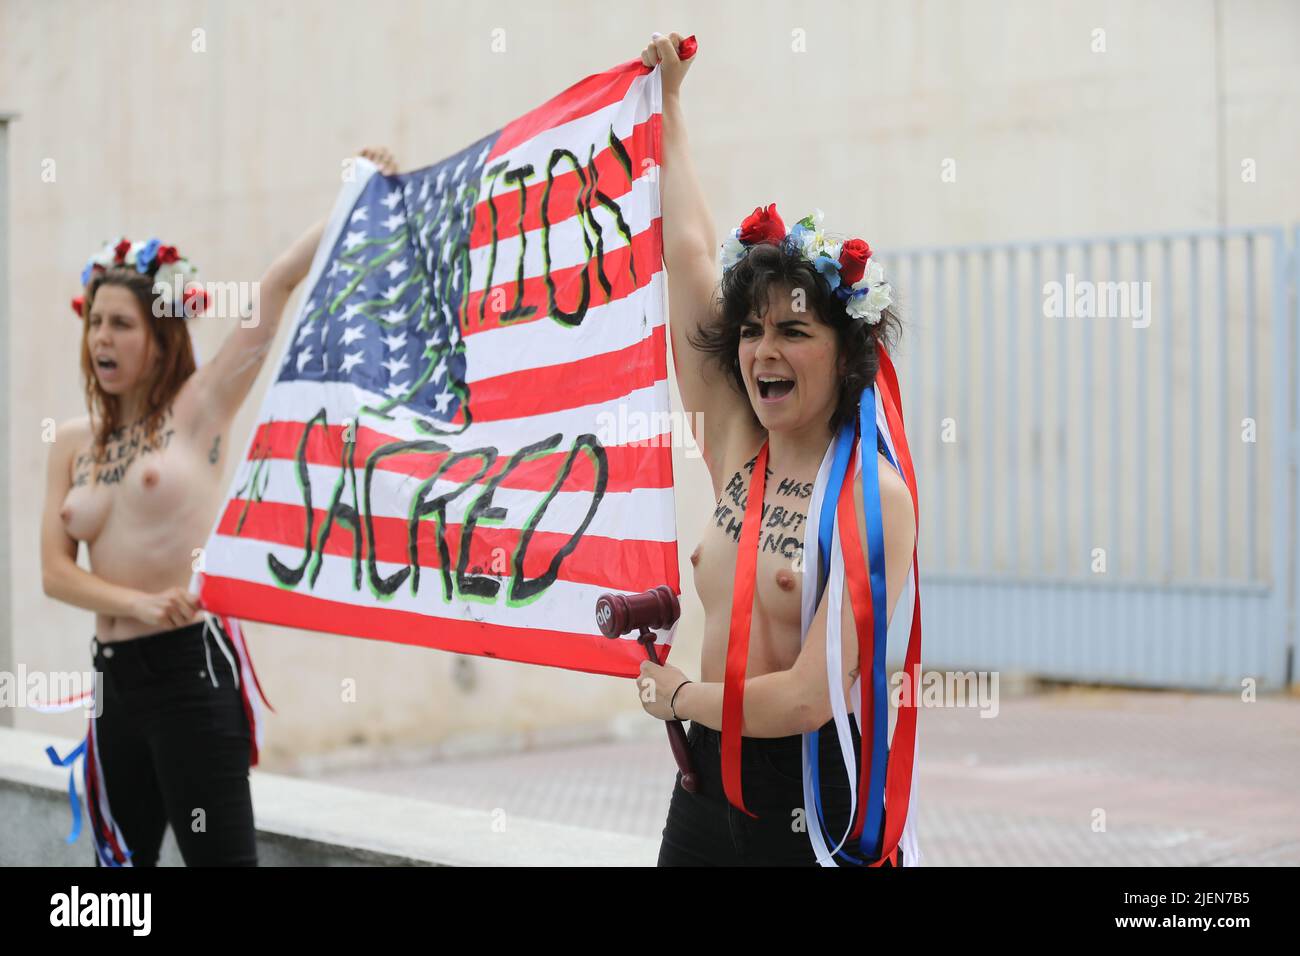 Madrid, España. 27th de junio de 2022. Miembros del grupo activista de mujeres Femen protestan con una pancarta que dice 'El aborto es sagrado' frente a la embajada de Estados Unidos en Madrid, España, el 27 de junio de 2022, tras la decisión de la Corte Suprema de Estados Unidos de poner fin al derecho constitucional al aborto. Crédito: Isabel Infantes/Alamy Live News Foto de stock